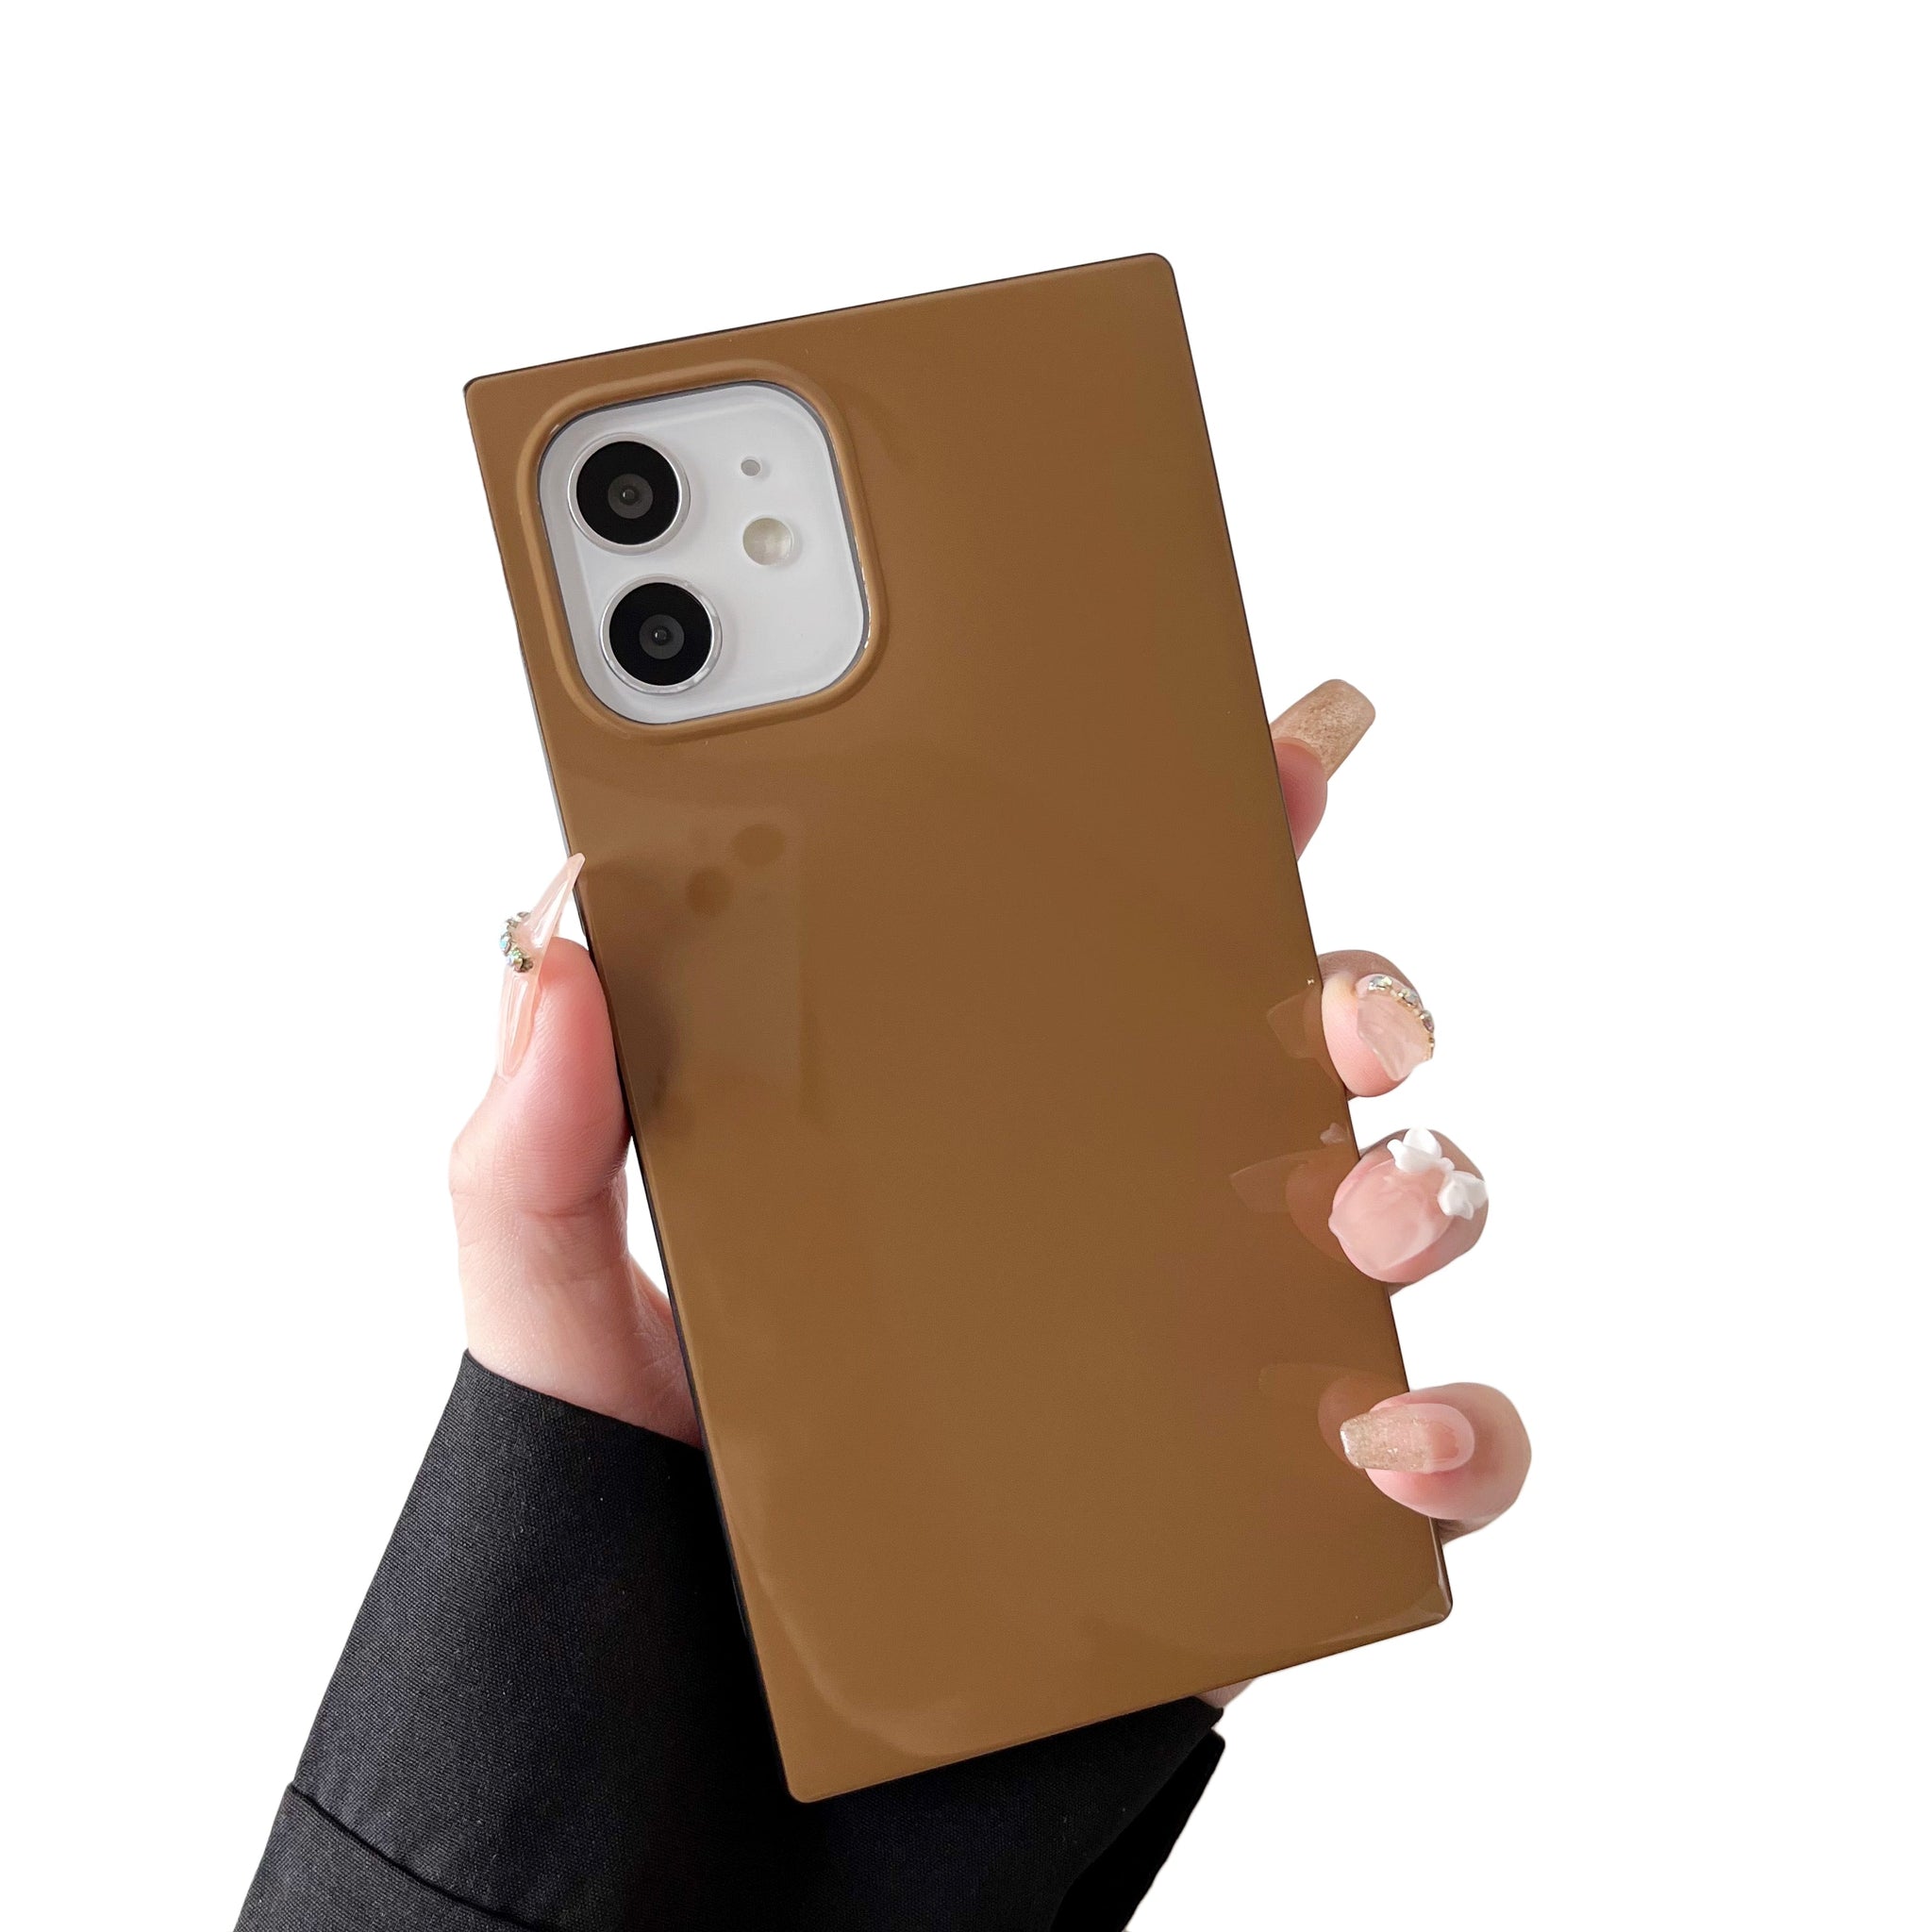 iPhone 12 Pro Max Case Square Neutral Plain Color (Golden Brown)